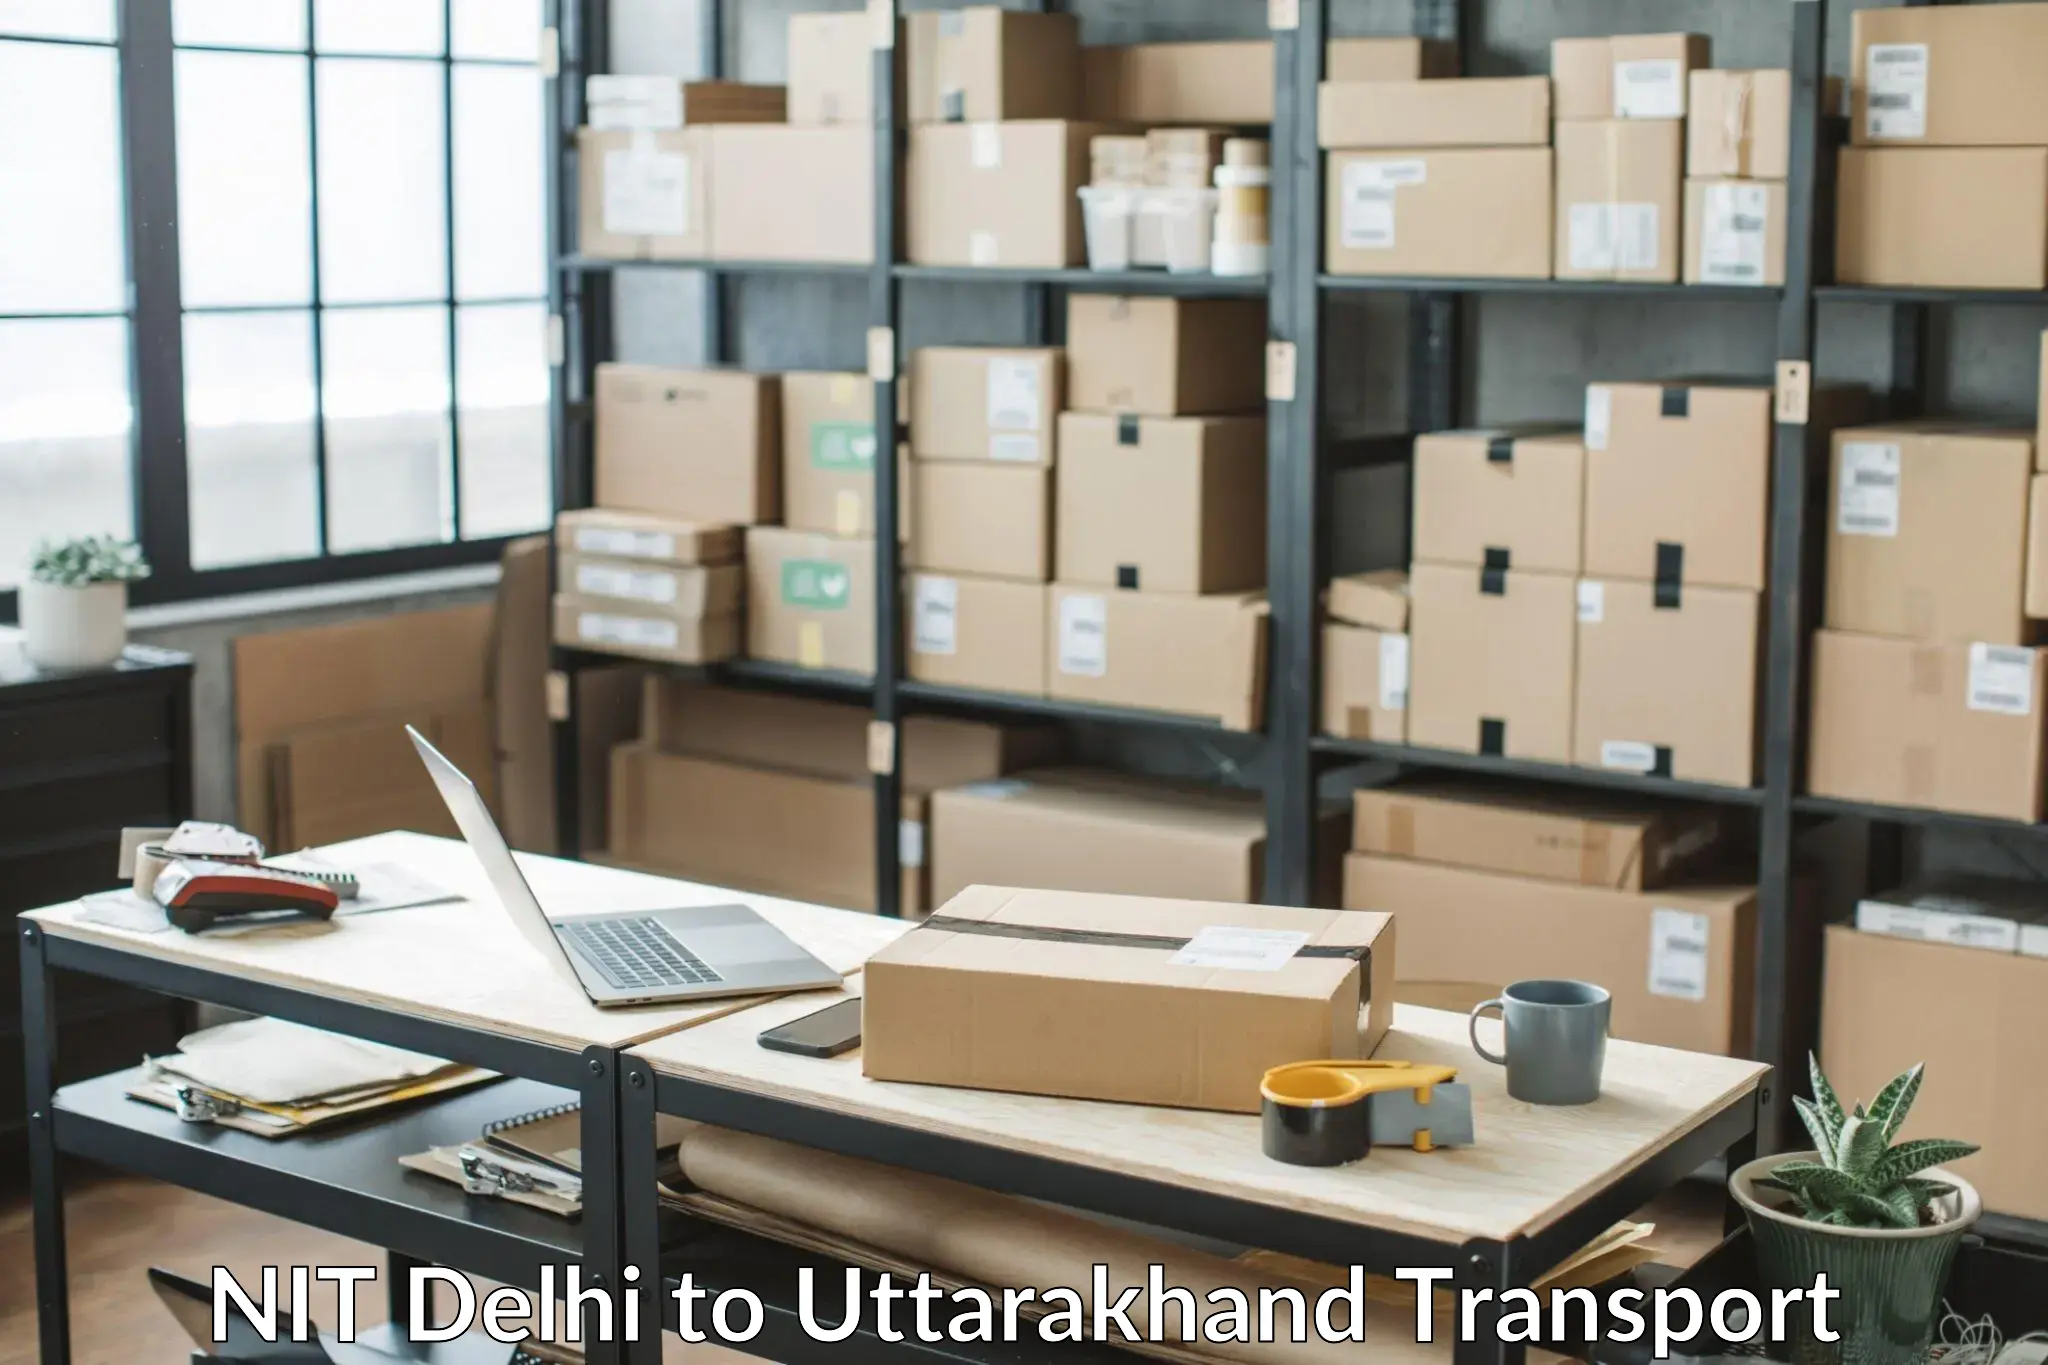 Bike shipping service NIT Delhi to Uttarakhand